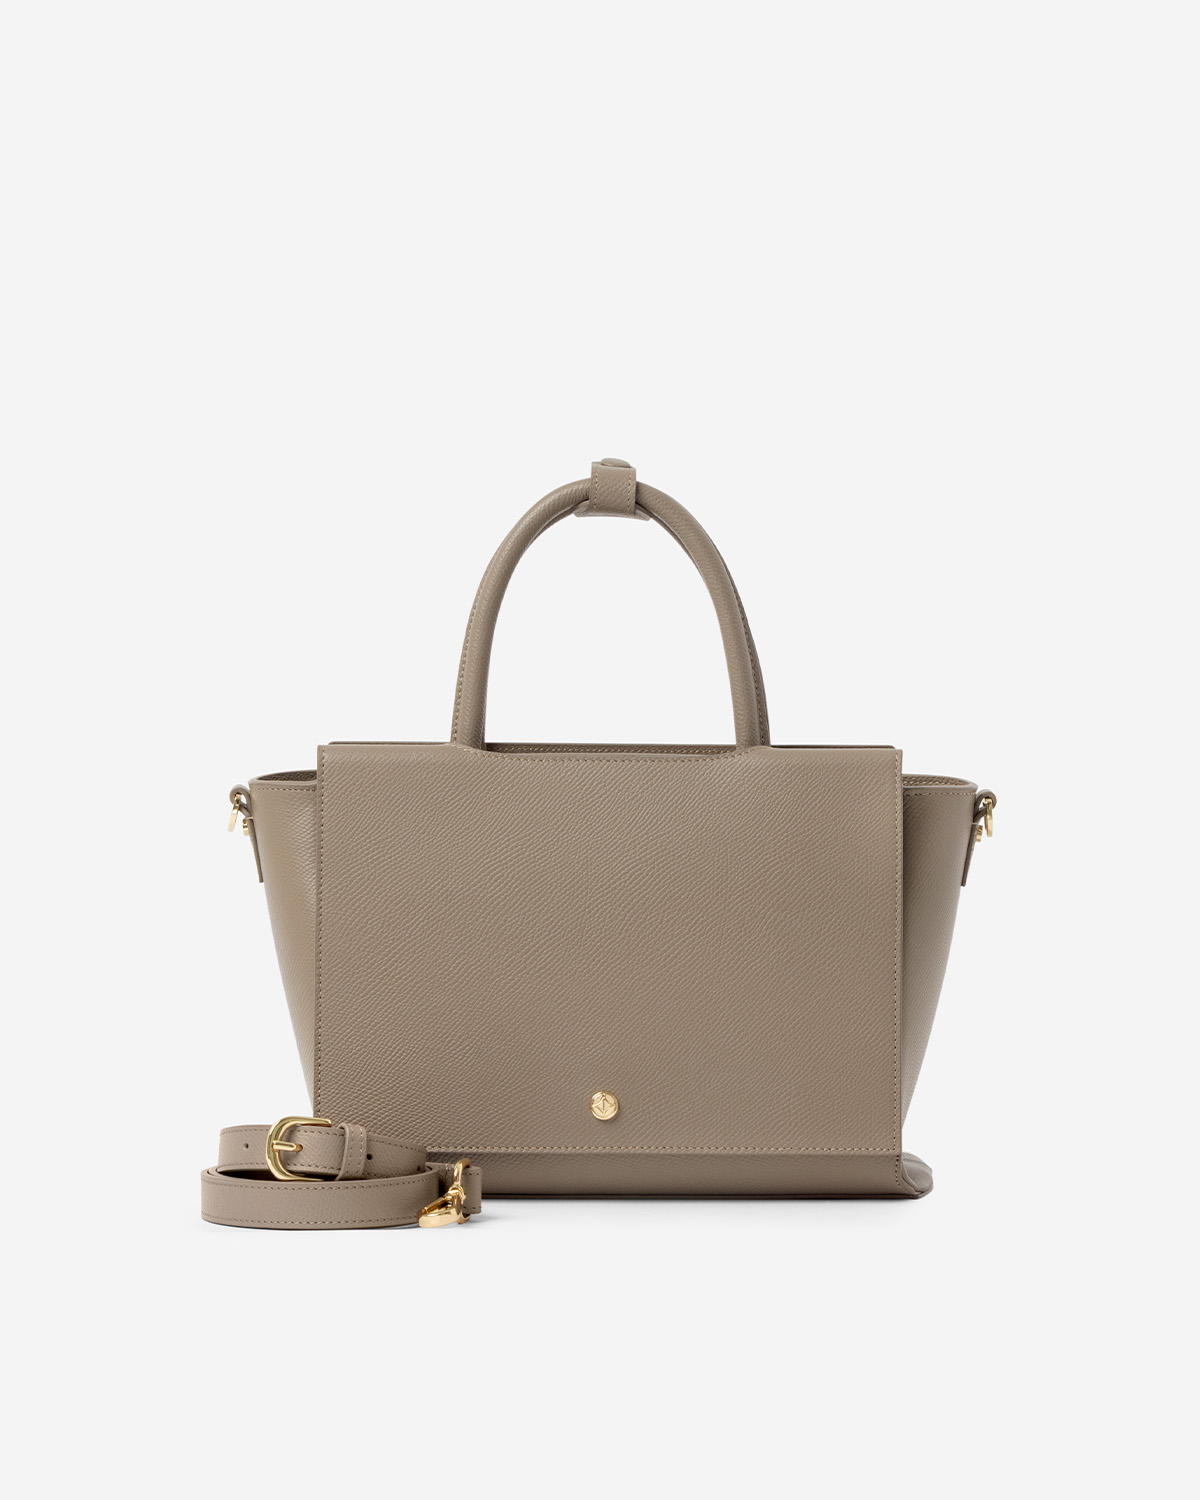 กระเป๋าถือหนังแท้ VERA Heidi Leather Handbag, ไซส์ 34 สี Taupe